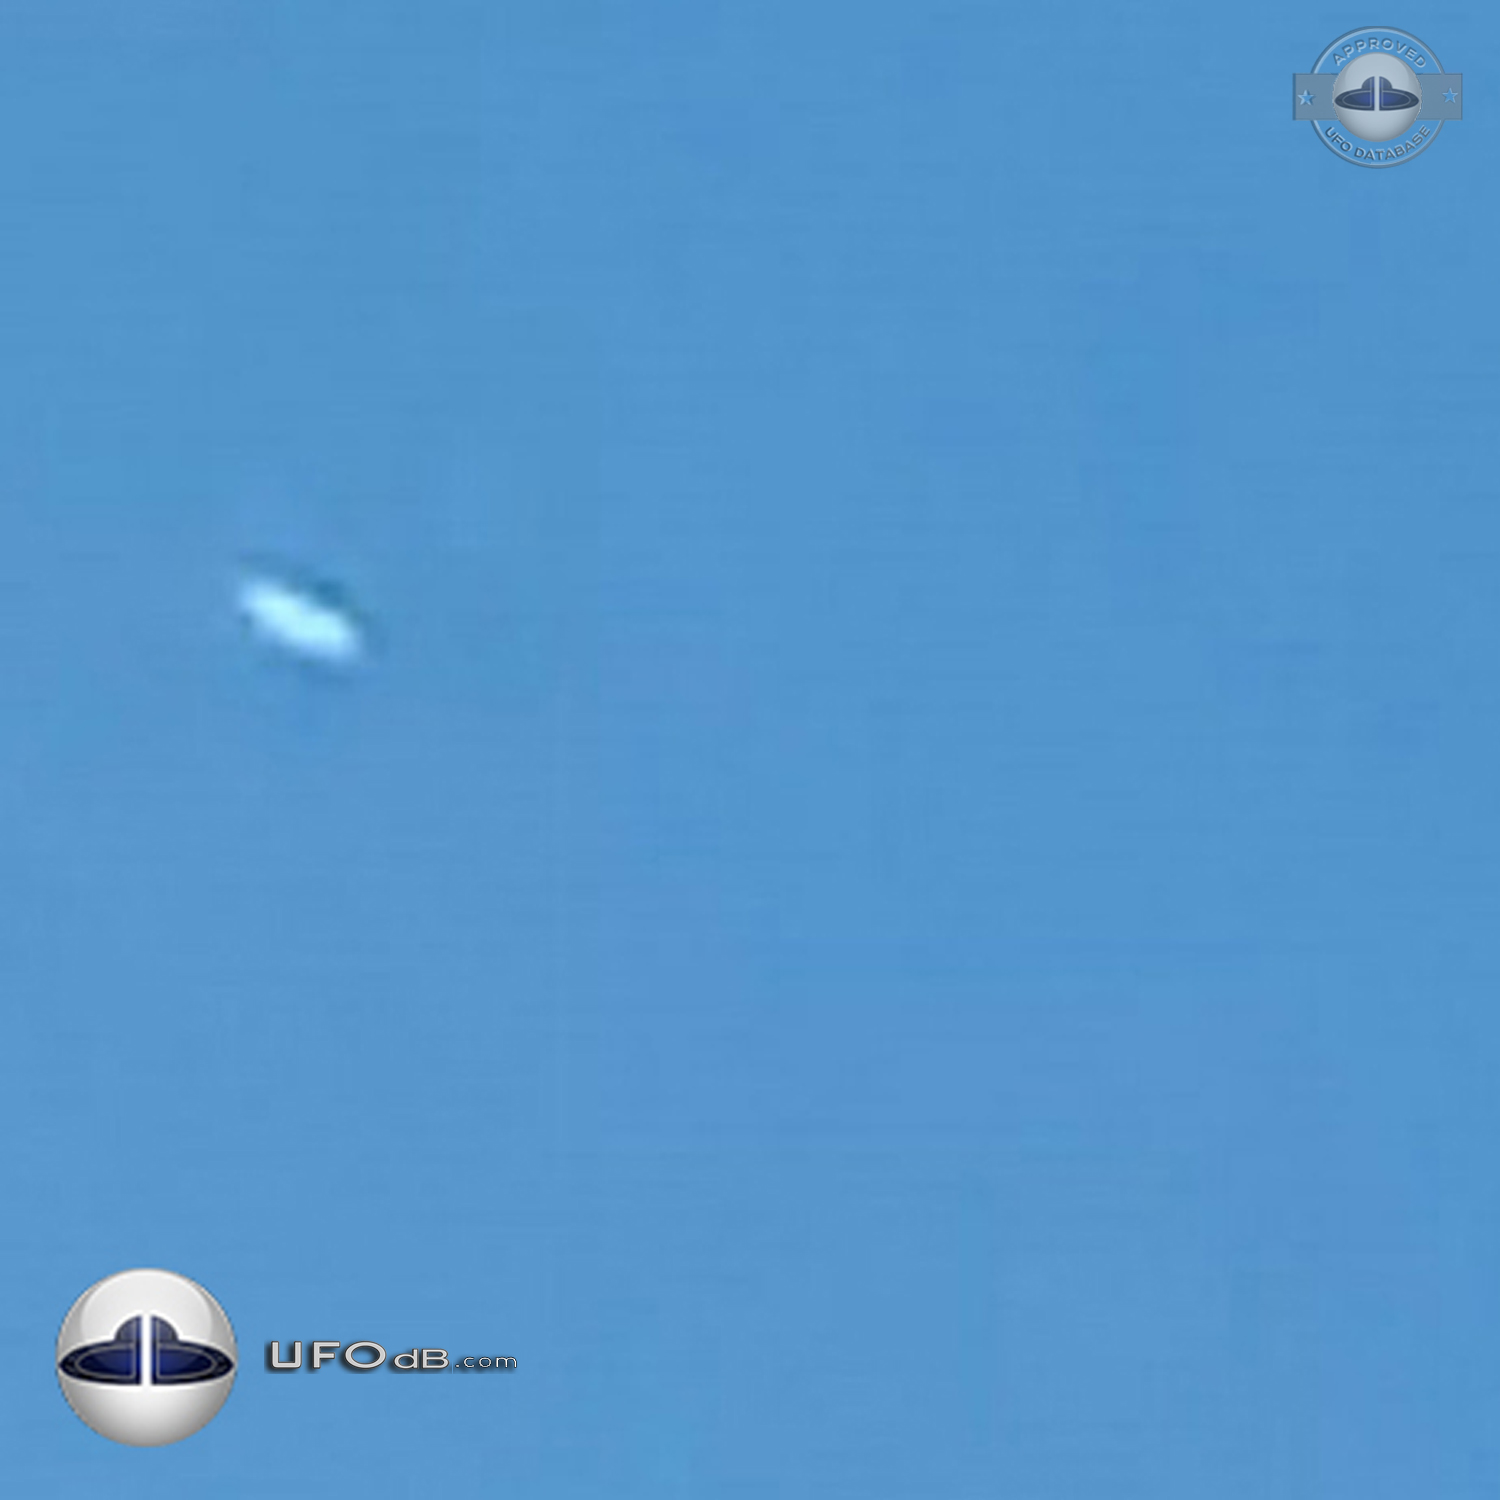 Silent silver Disk UFO gliding in the sky Dalton Pennsylvania USA 2015 UFO Picture #669-4